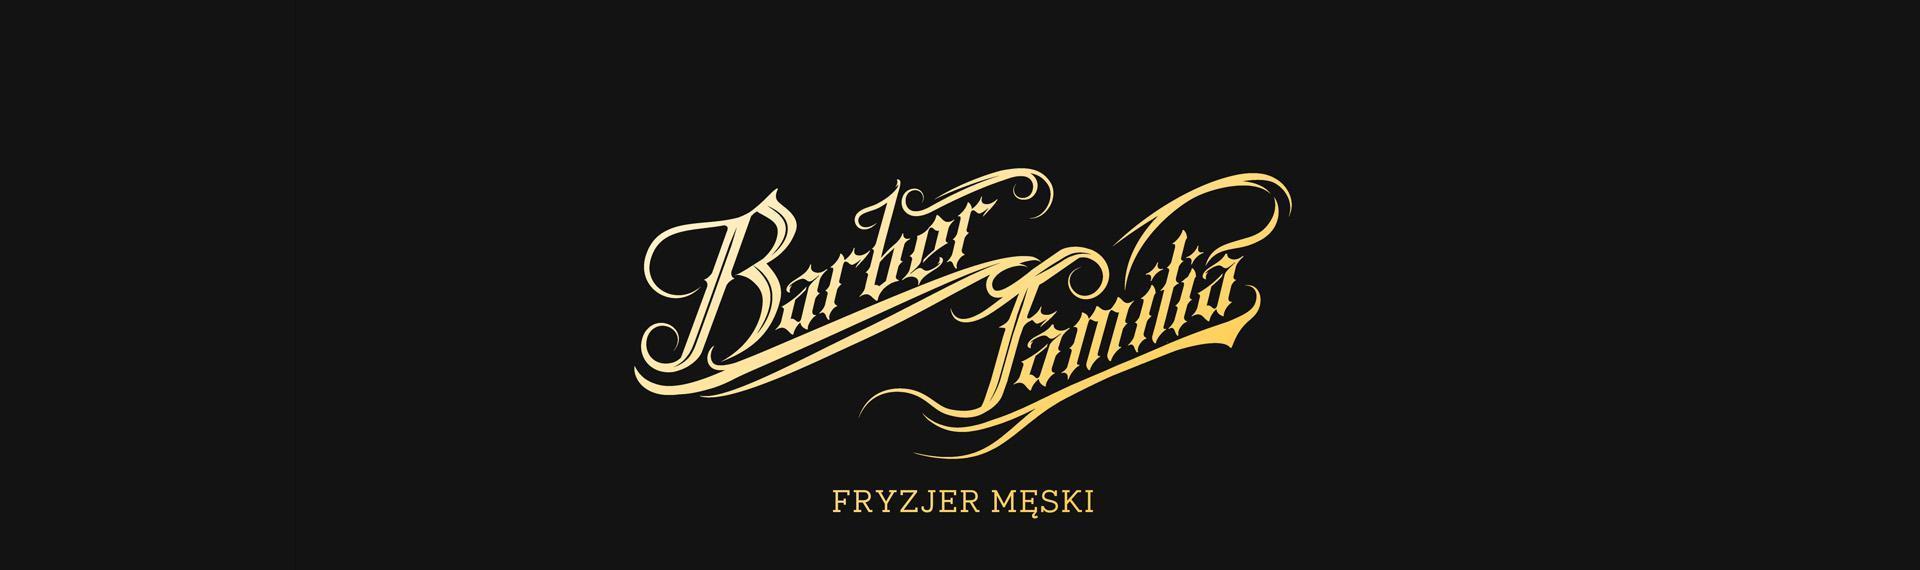 Barber Familia - fryzjer męski Slajd #1